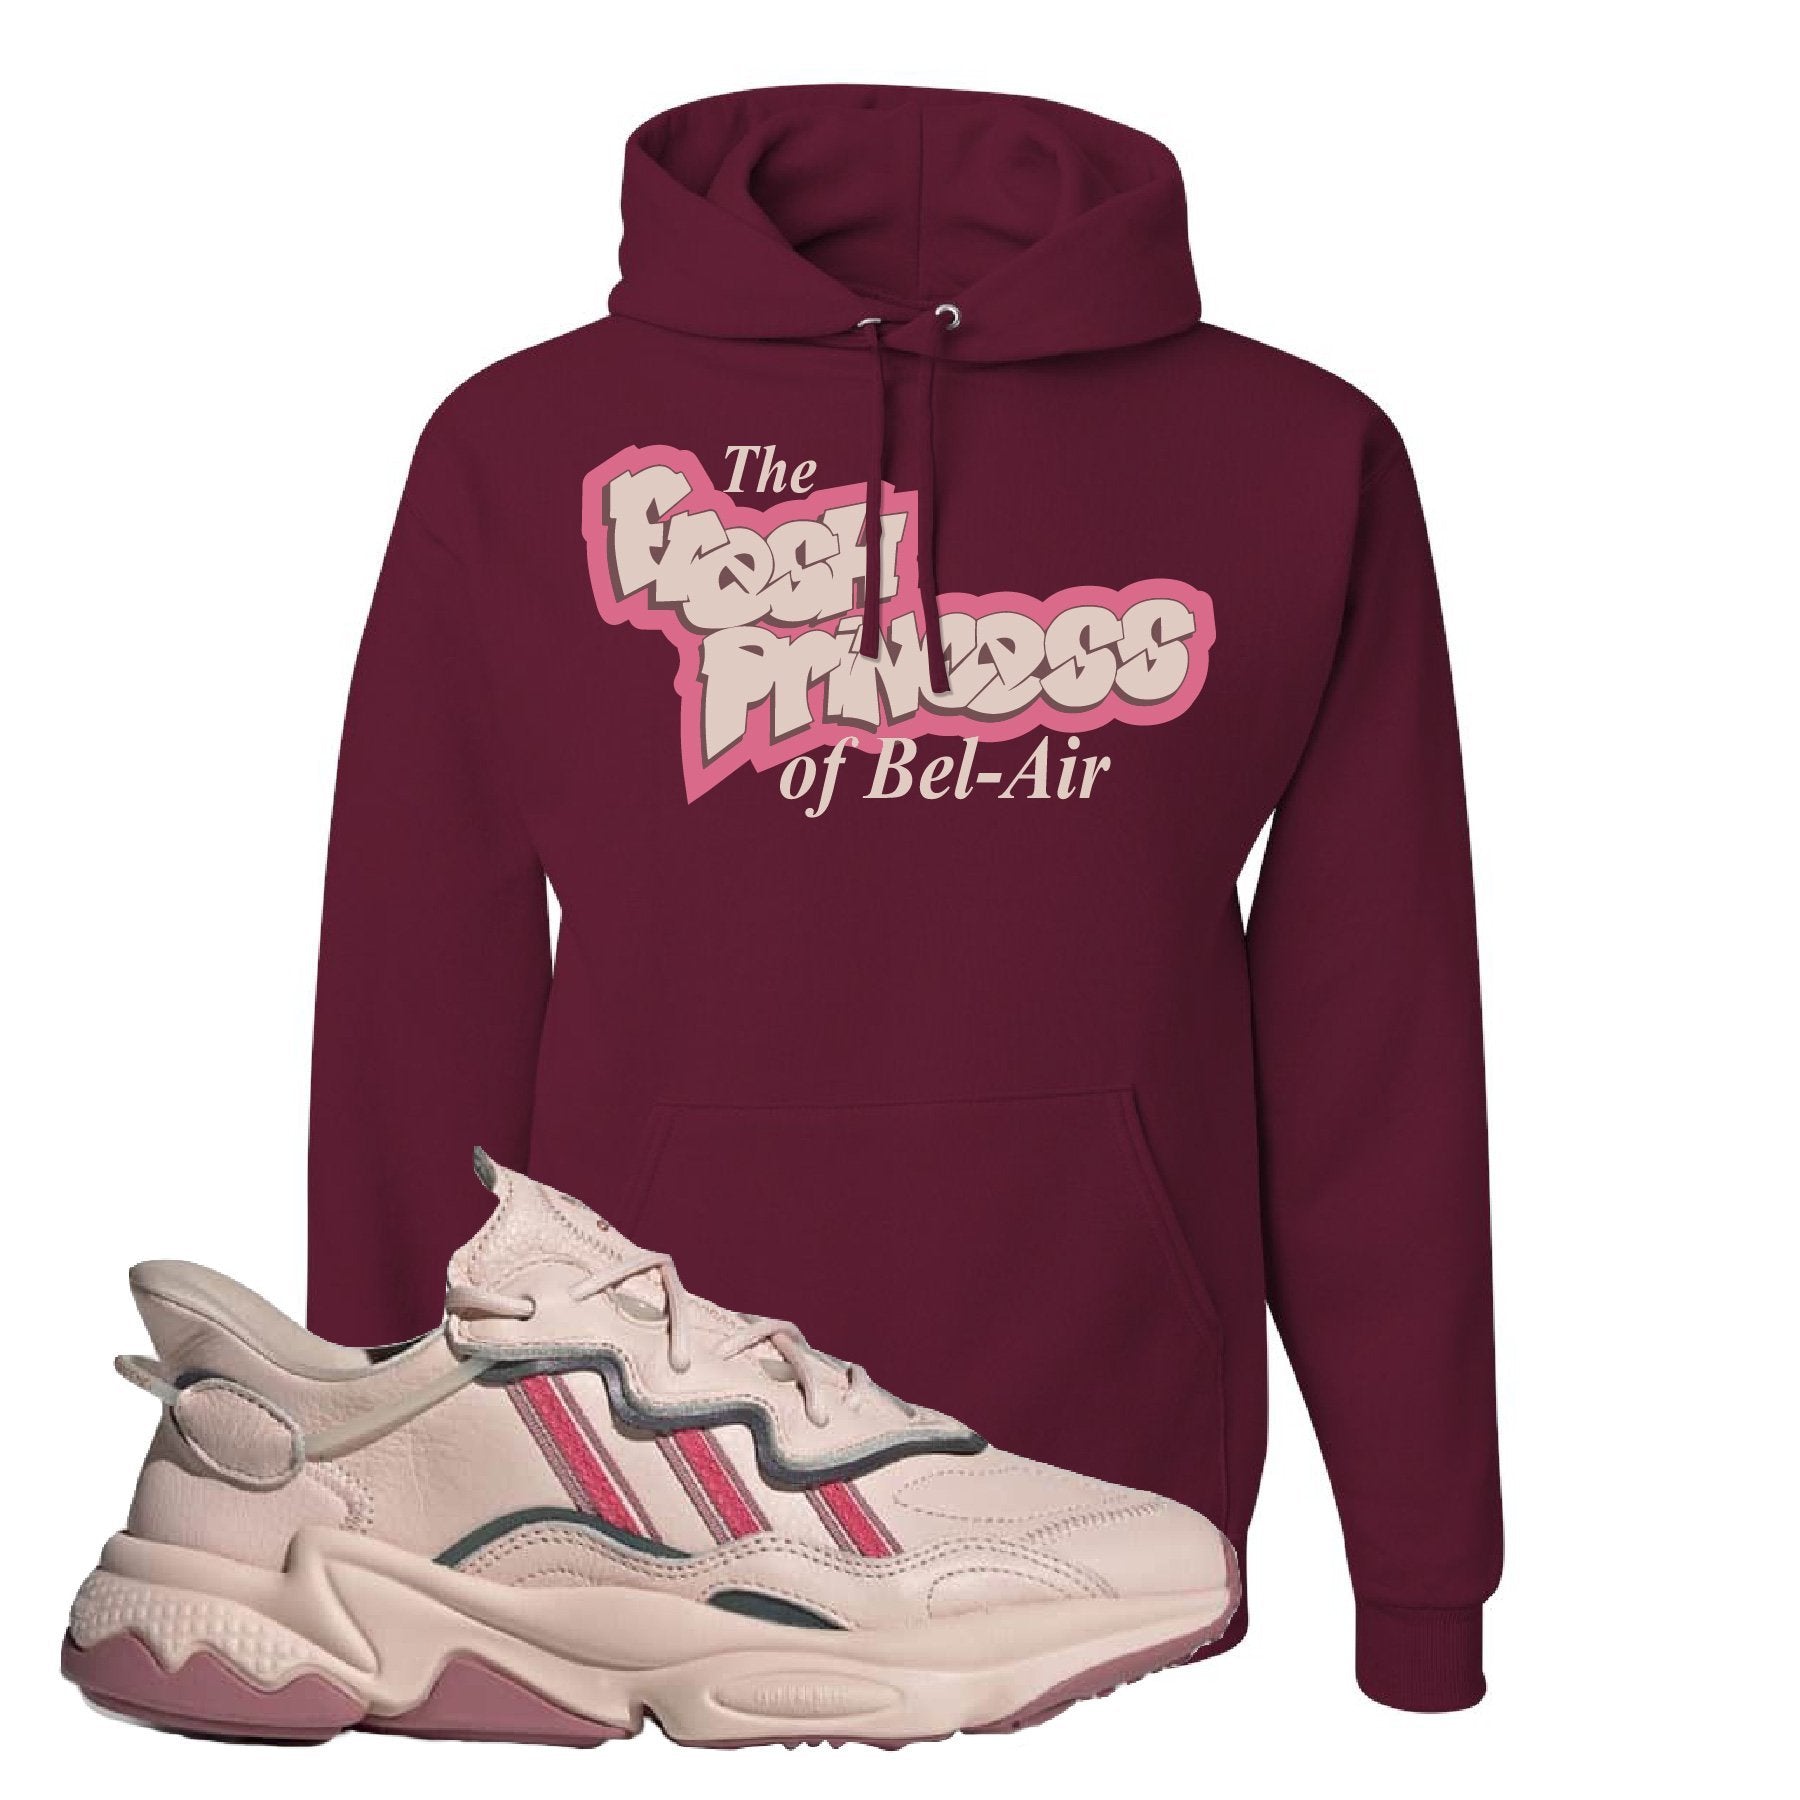 Adidas WMNS Ozweego Icy Pink Fresh Princess of Bel Air Maroon Sneaker Hook Up Pullover Hoodie